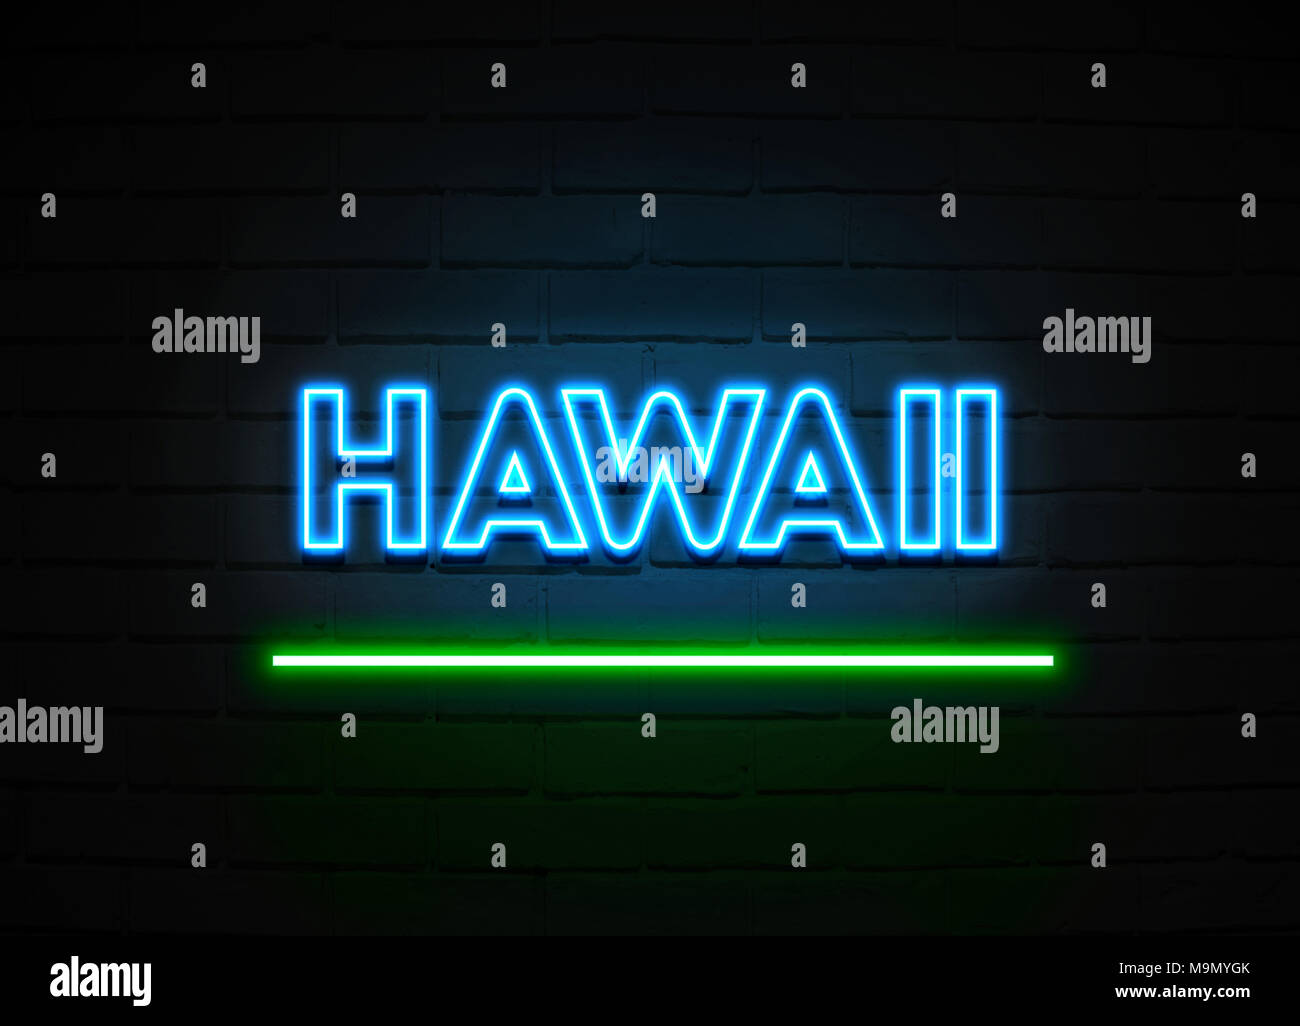 Hawaii Leuchtreklame - glühende Leuchtreklame auf brickwall Wand - 3D-Royalty Free Stock Illustration dargestellt. Stockfoto